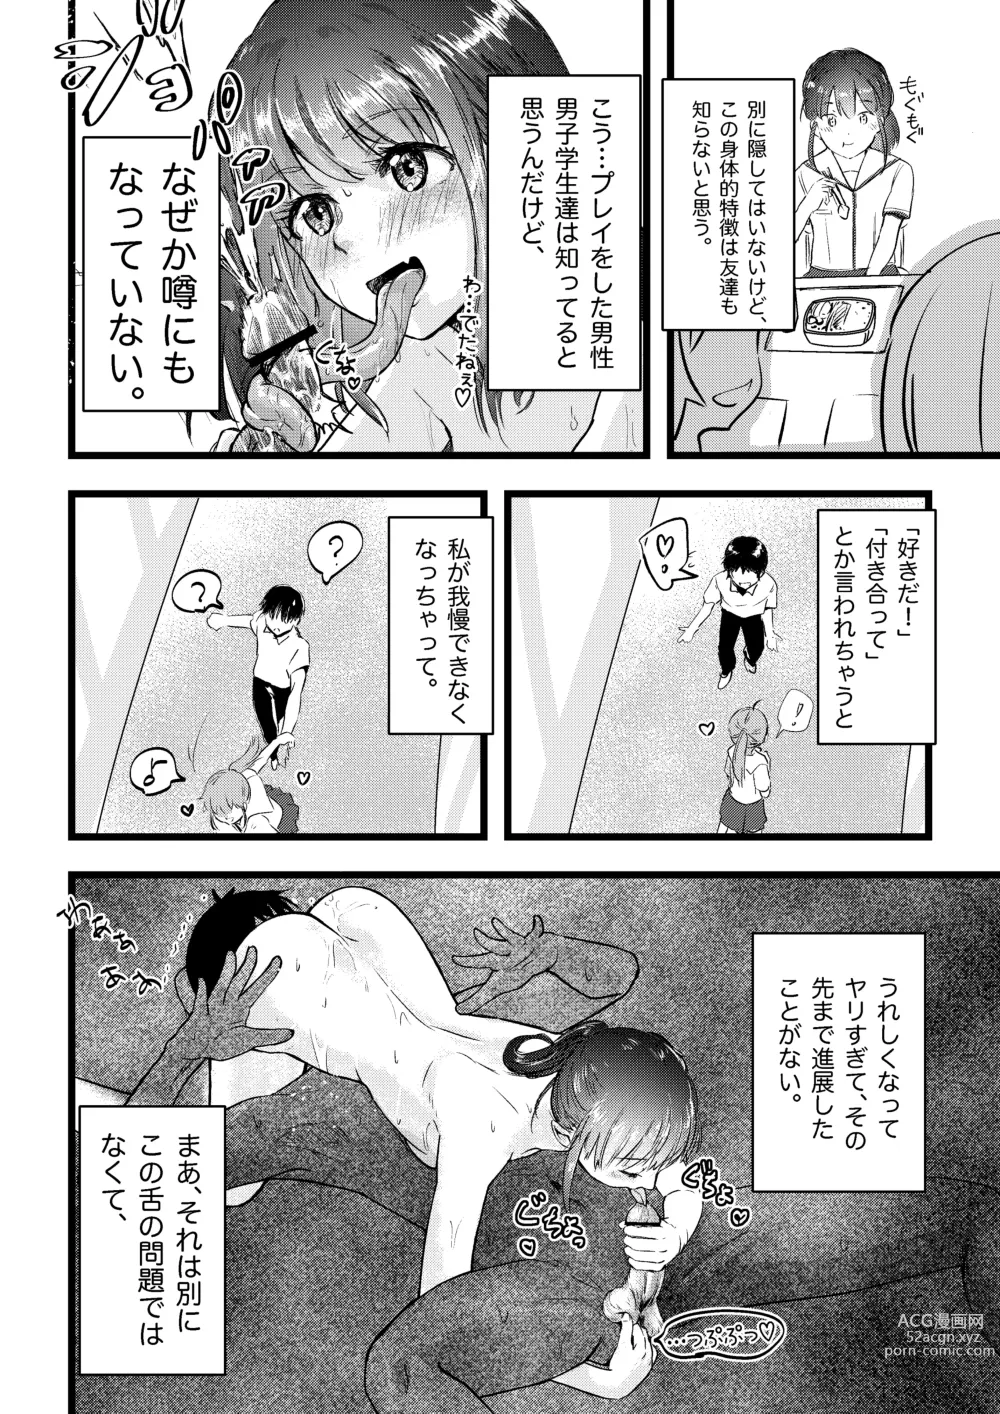 Page 4 of doujinshi Shitanaga-chan to Kanbotsu-chan no Muishiki Yuri Ecchi